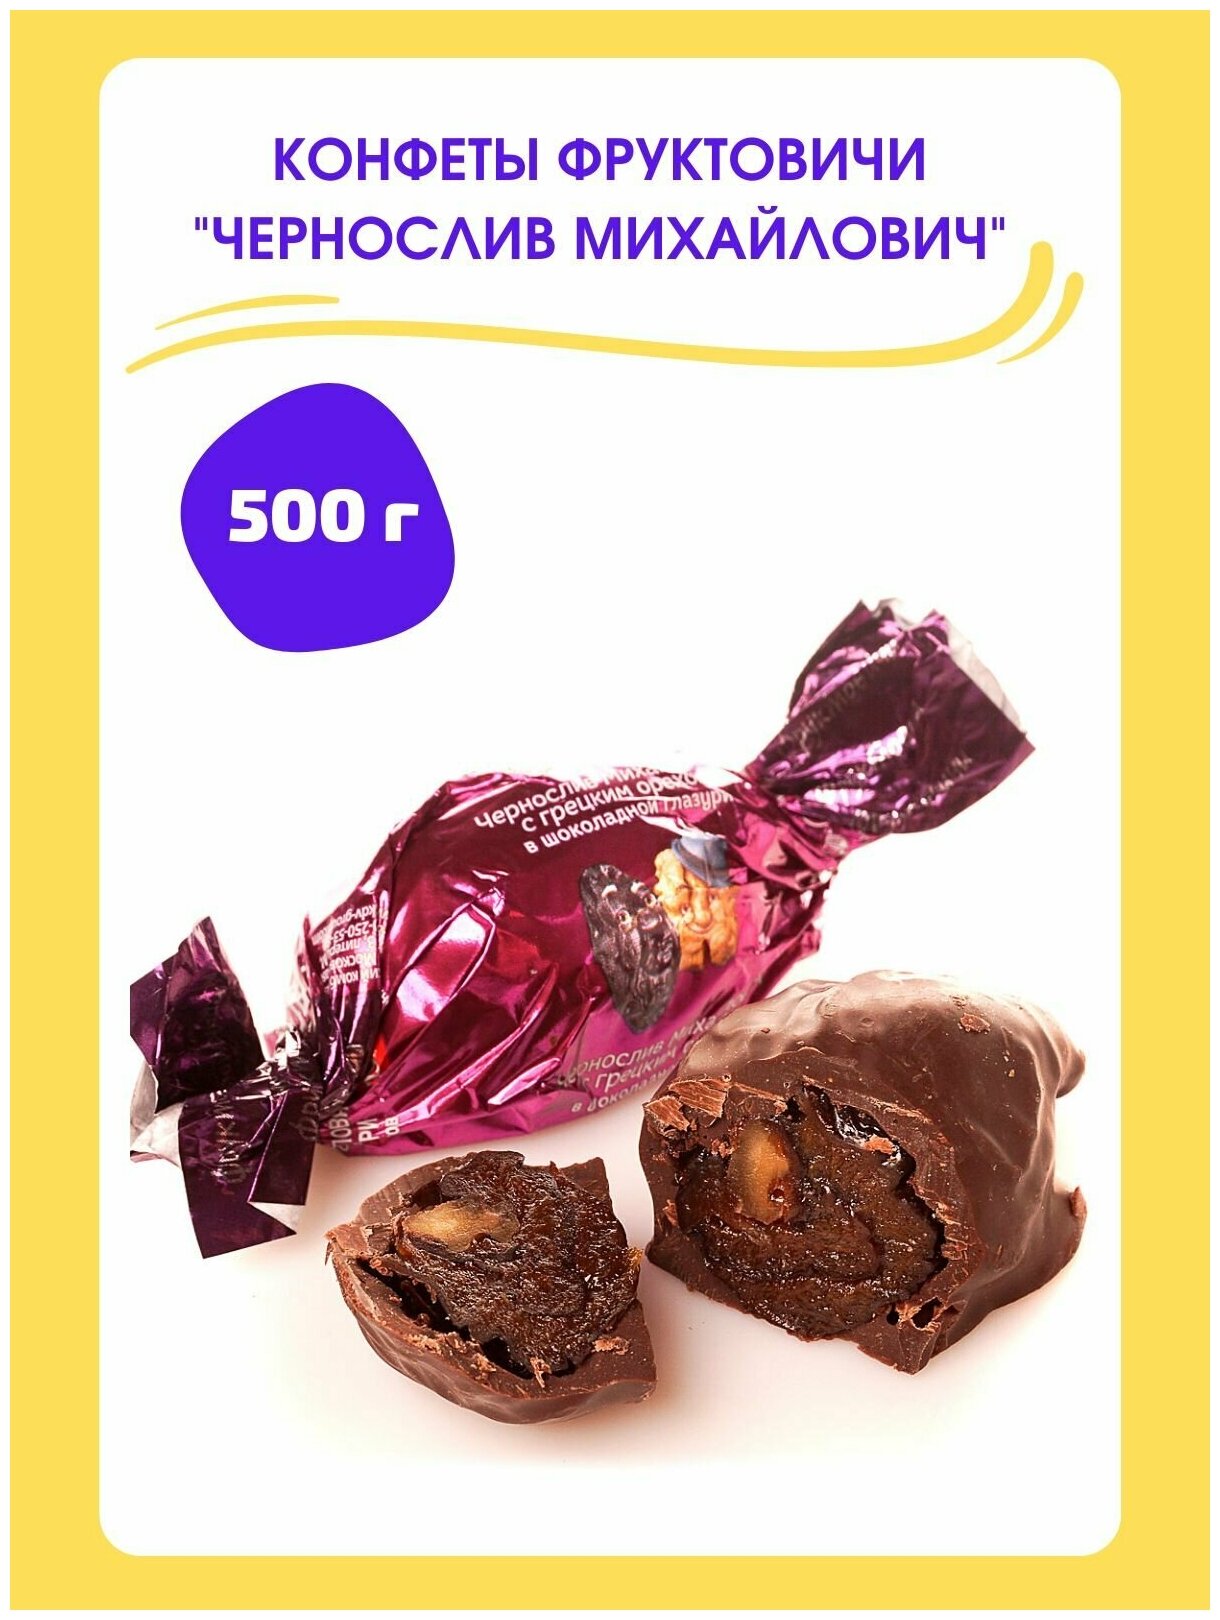 Конфеты шоколадные "Чернослив Михайлович", 500 гр